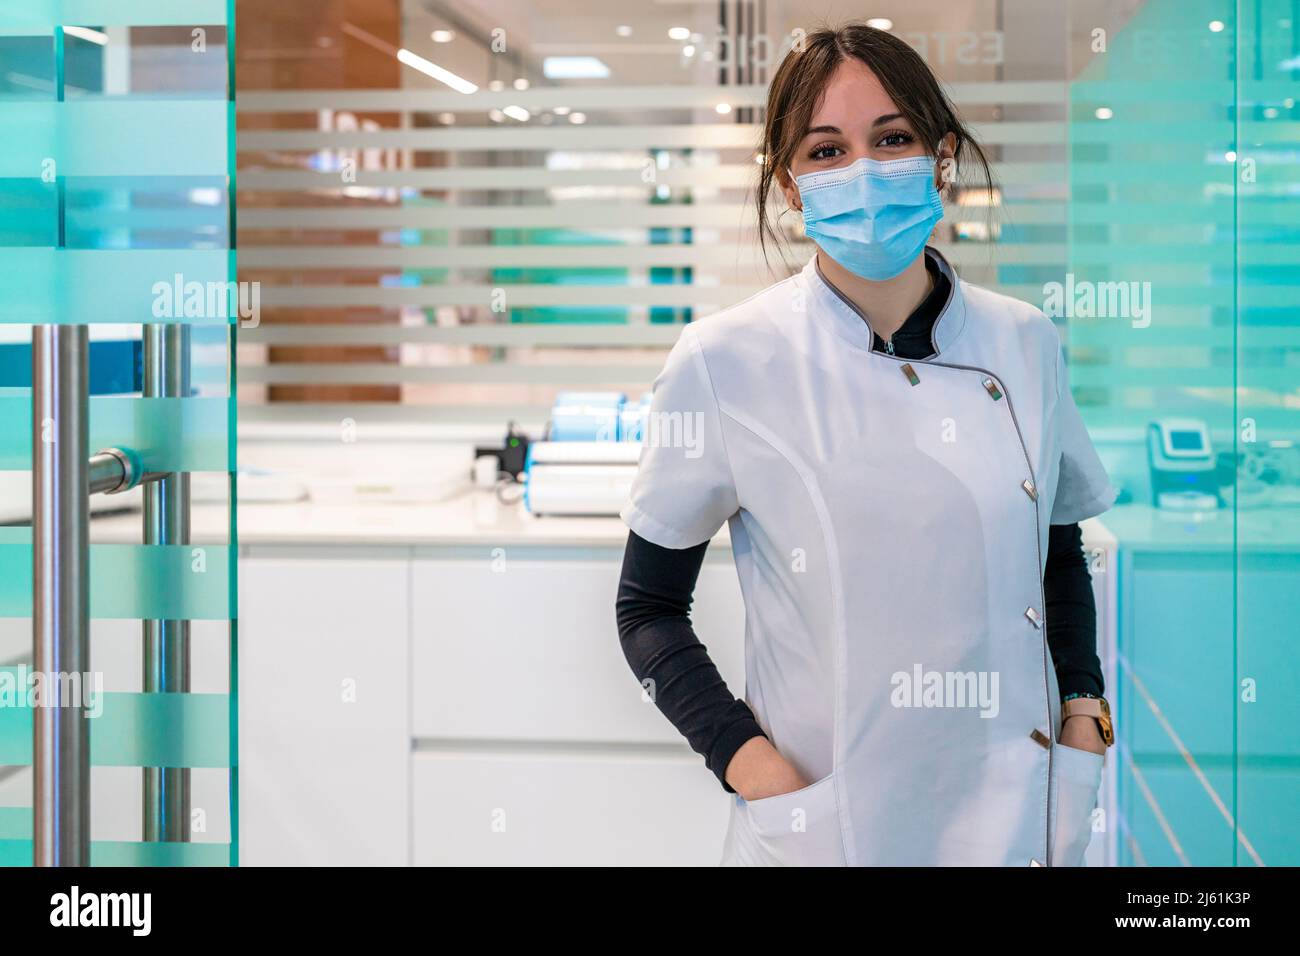 Infirmière dans le masque facial de protection debout avec les mains dans les poches à l'hôpital Banque D'Images